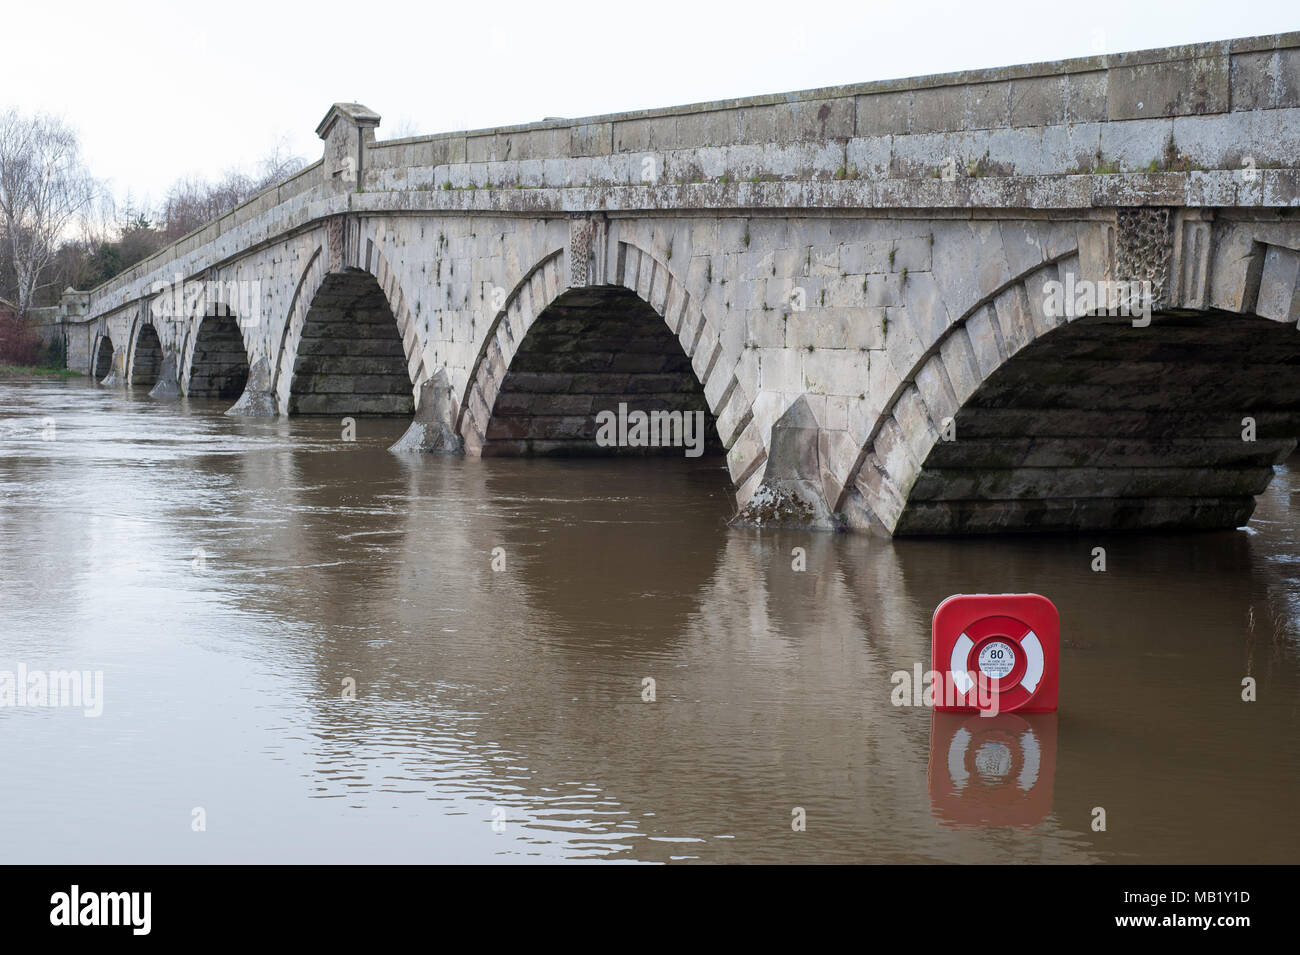 Passerelle historique du 18ème siècle et 20ème siècle pont-route à Atcham, Shropshire, Angleterre sur la rivière Severn inondées au printemps Banque D'Images